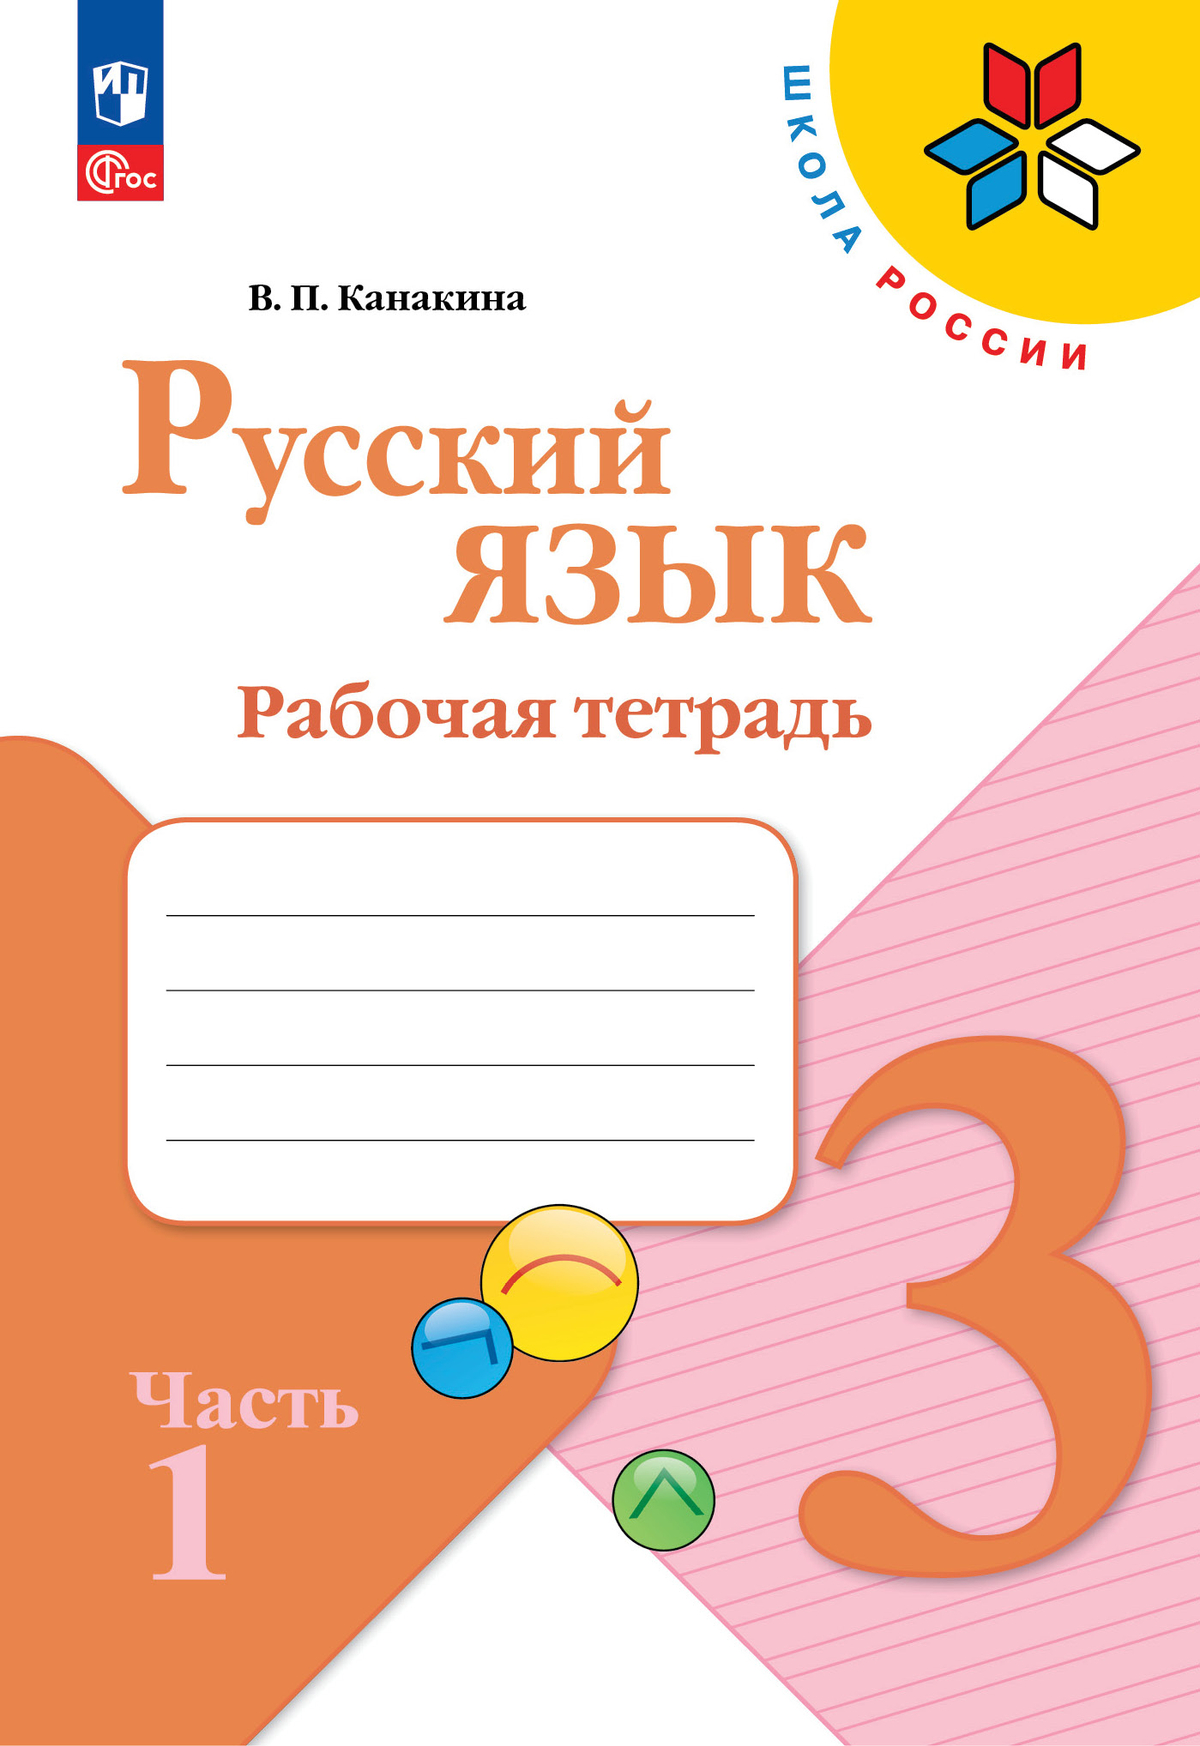 Русский язык. Рабочая тетрадь. 3 класс. В 2-х ч. Ч. 1 1